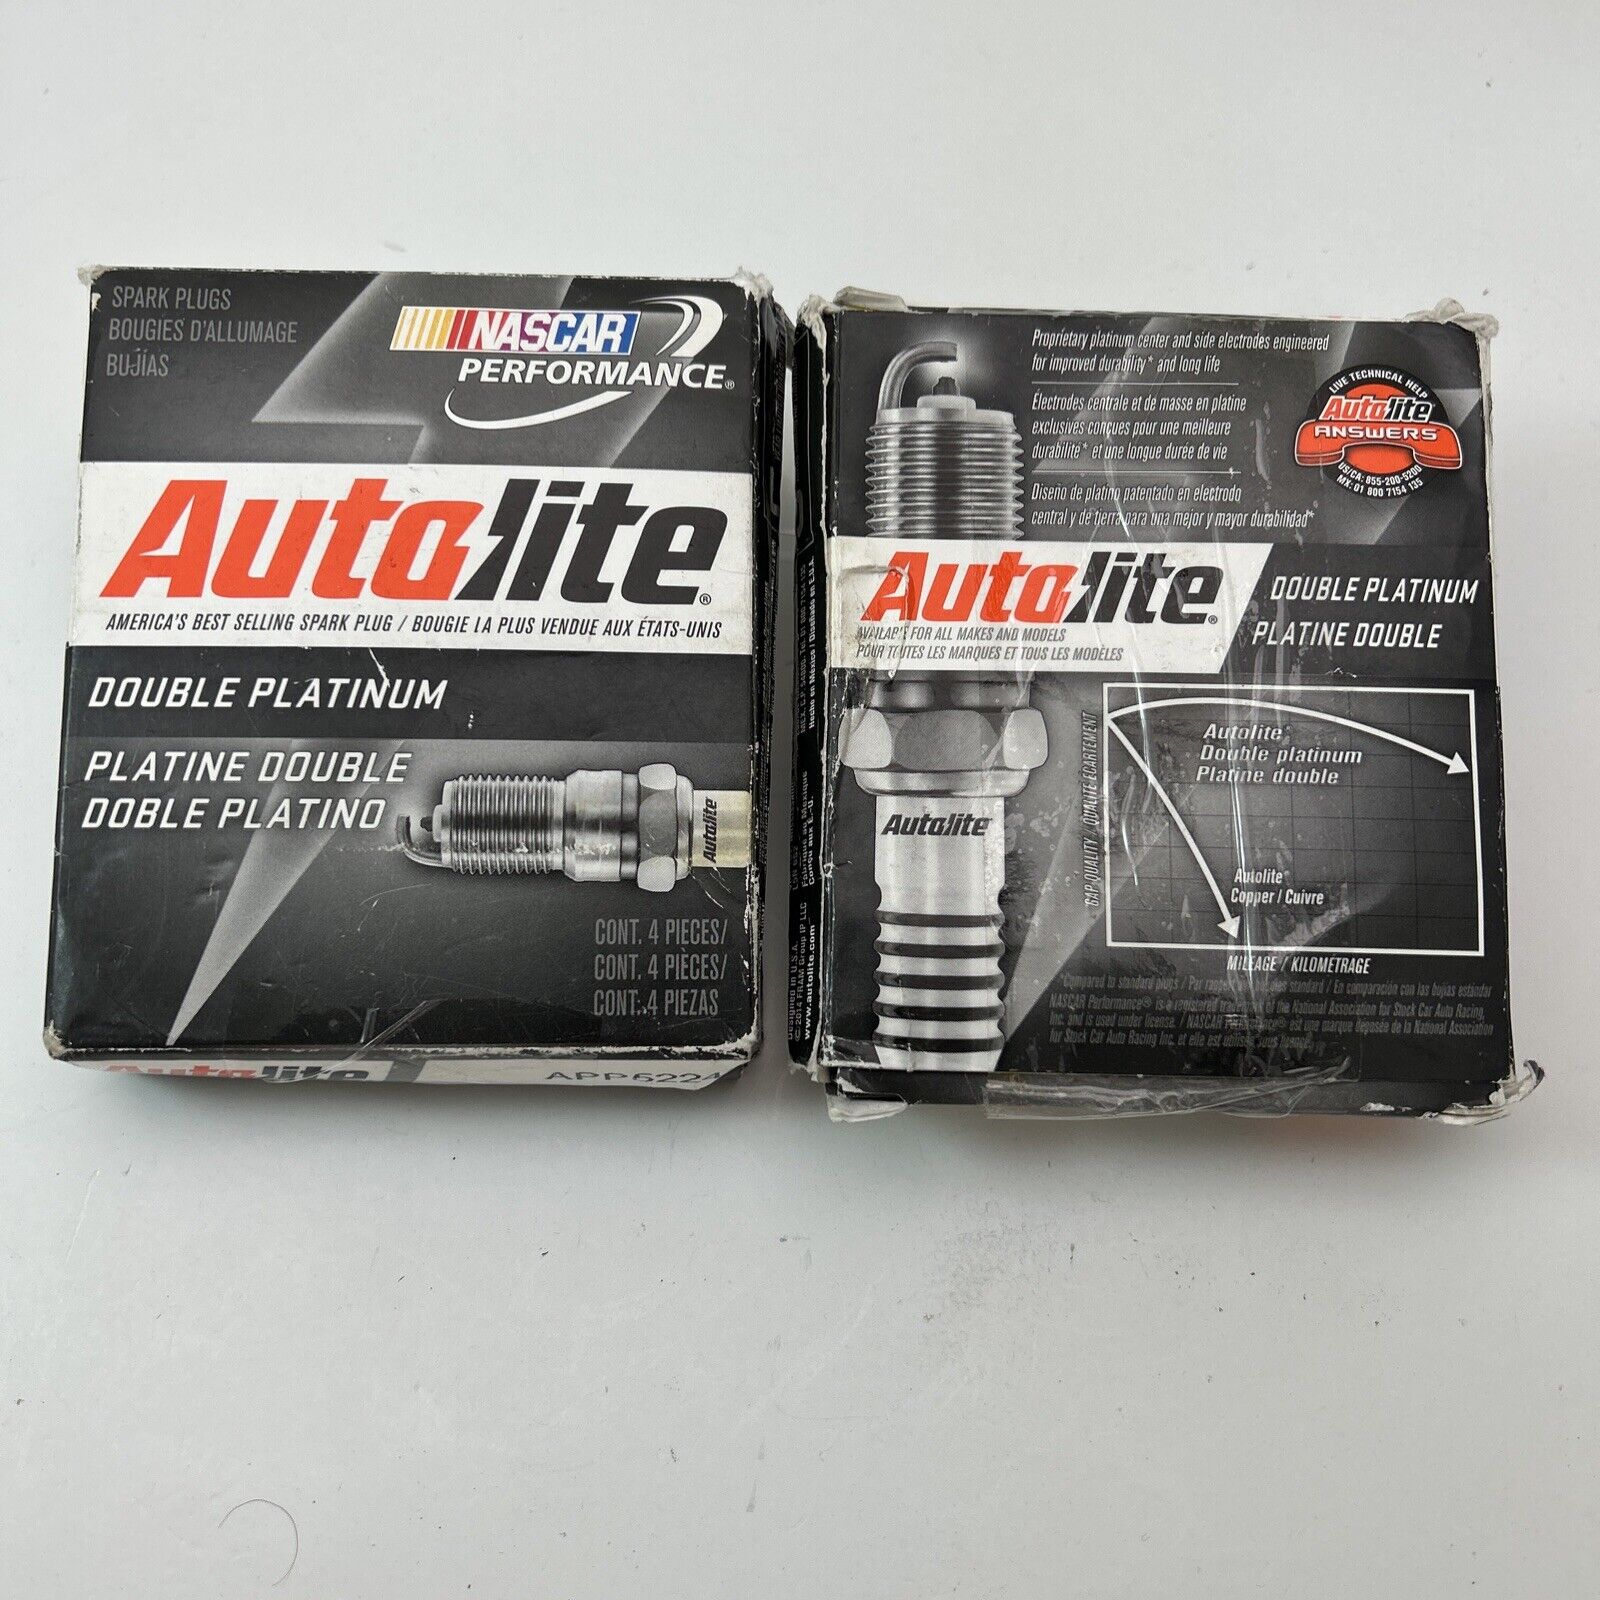 Autolite APP5224 Double Platinum Automotive Replacement Spark Plugs - 8 qty